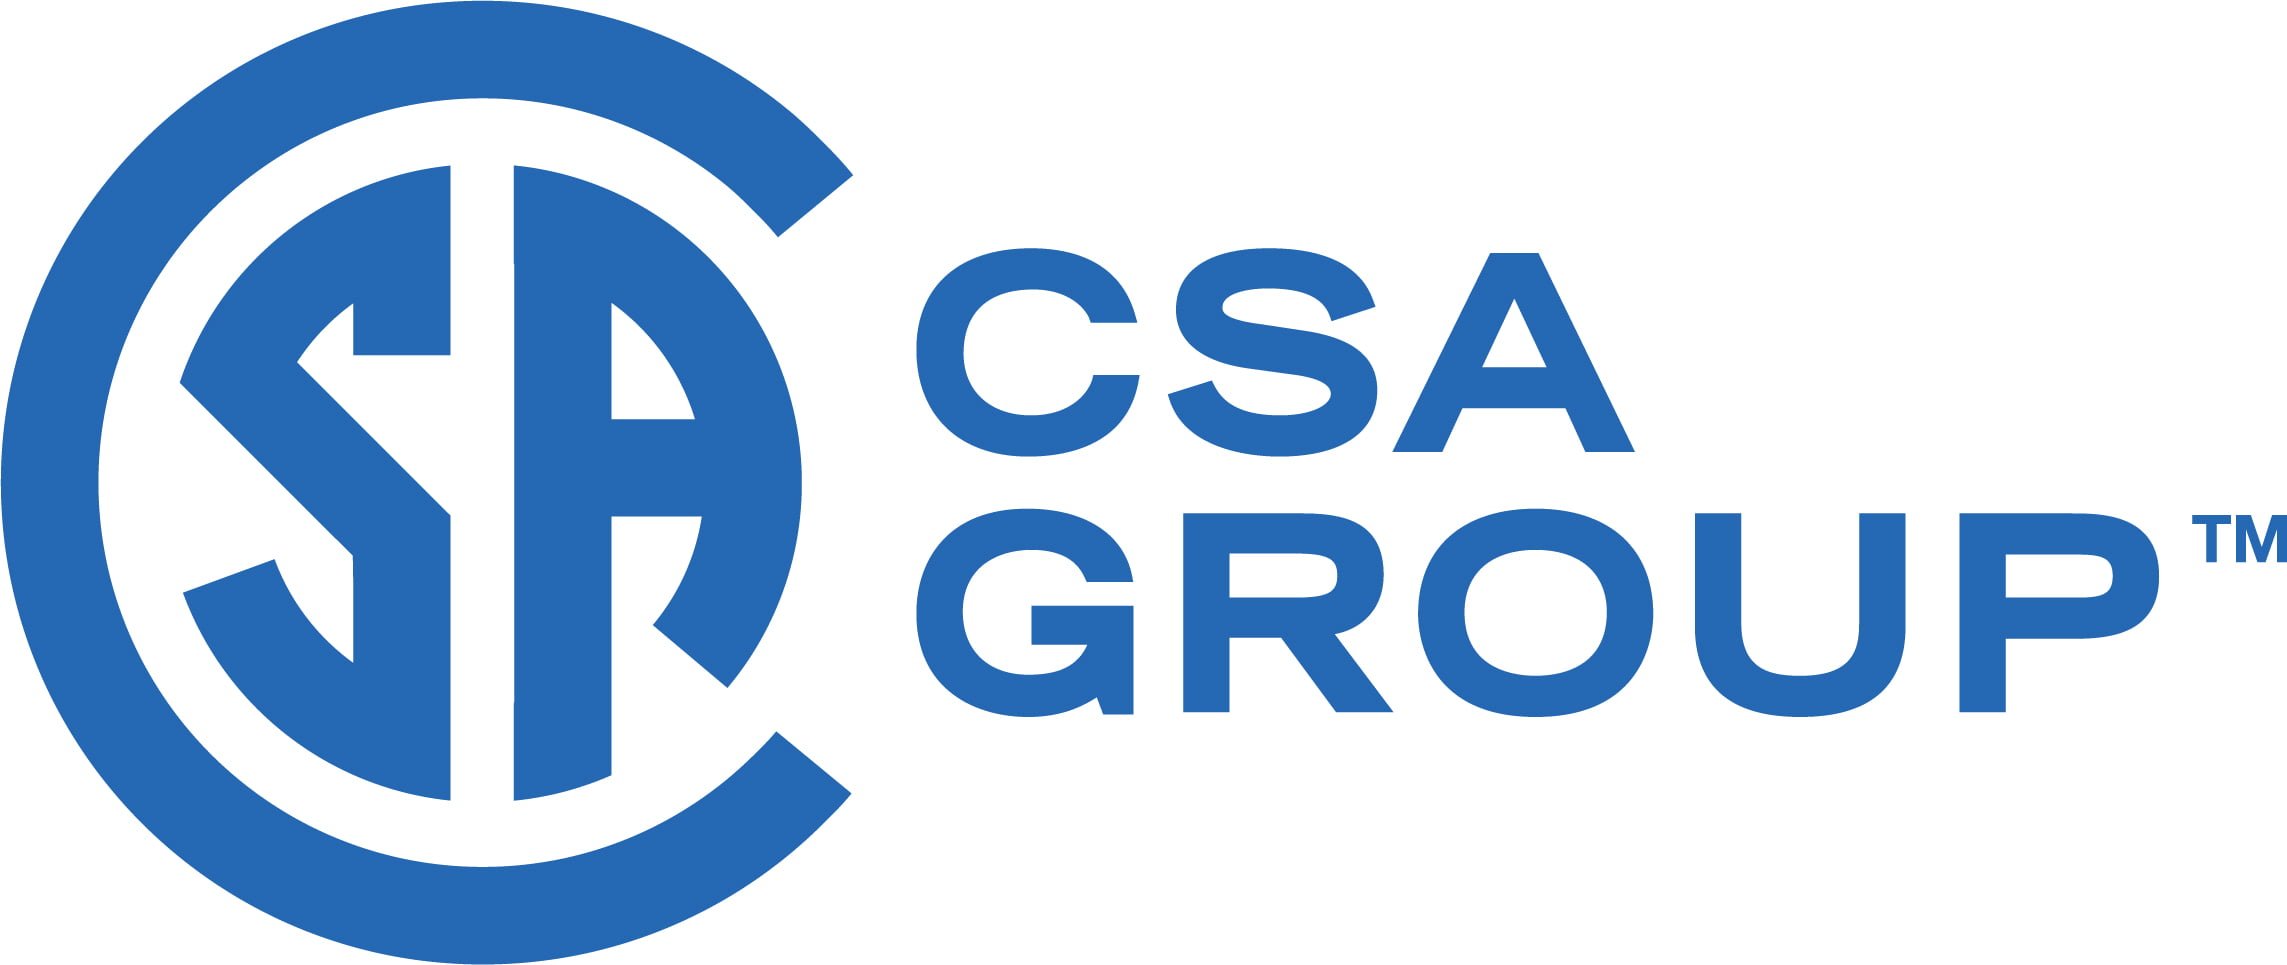 دانلود استاندارد گروه CSA -CSA Group- دانلود پکیج کامل استانداردهای CSA خرید استاندارد CSA